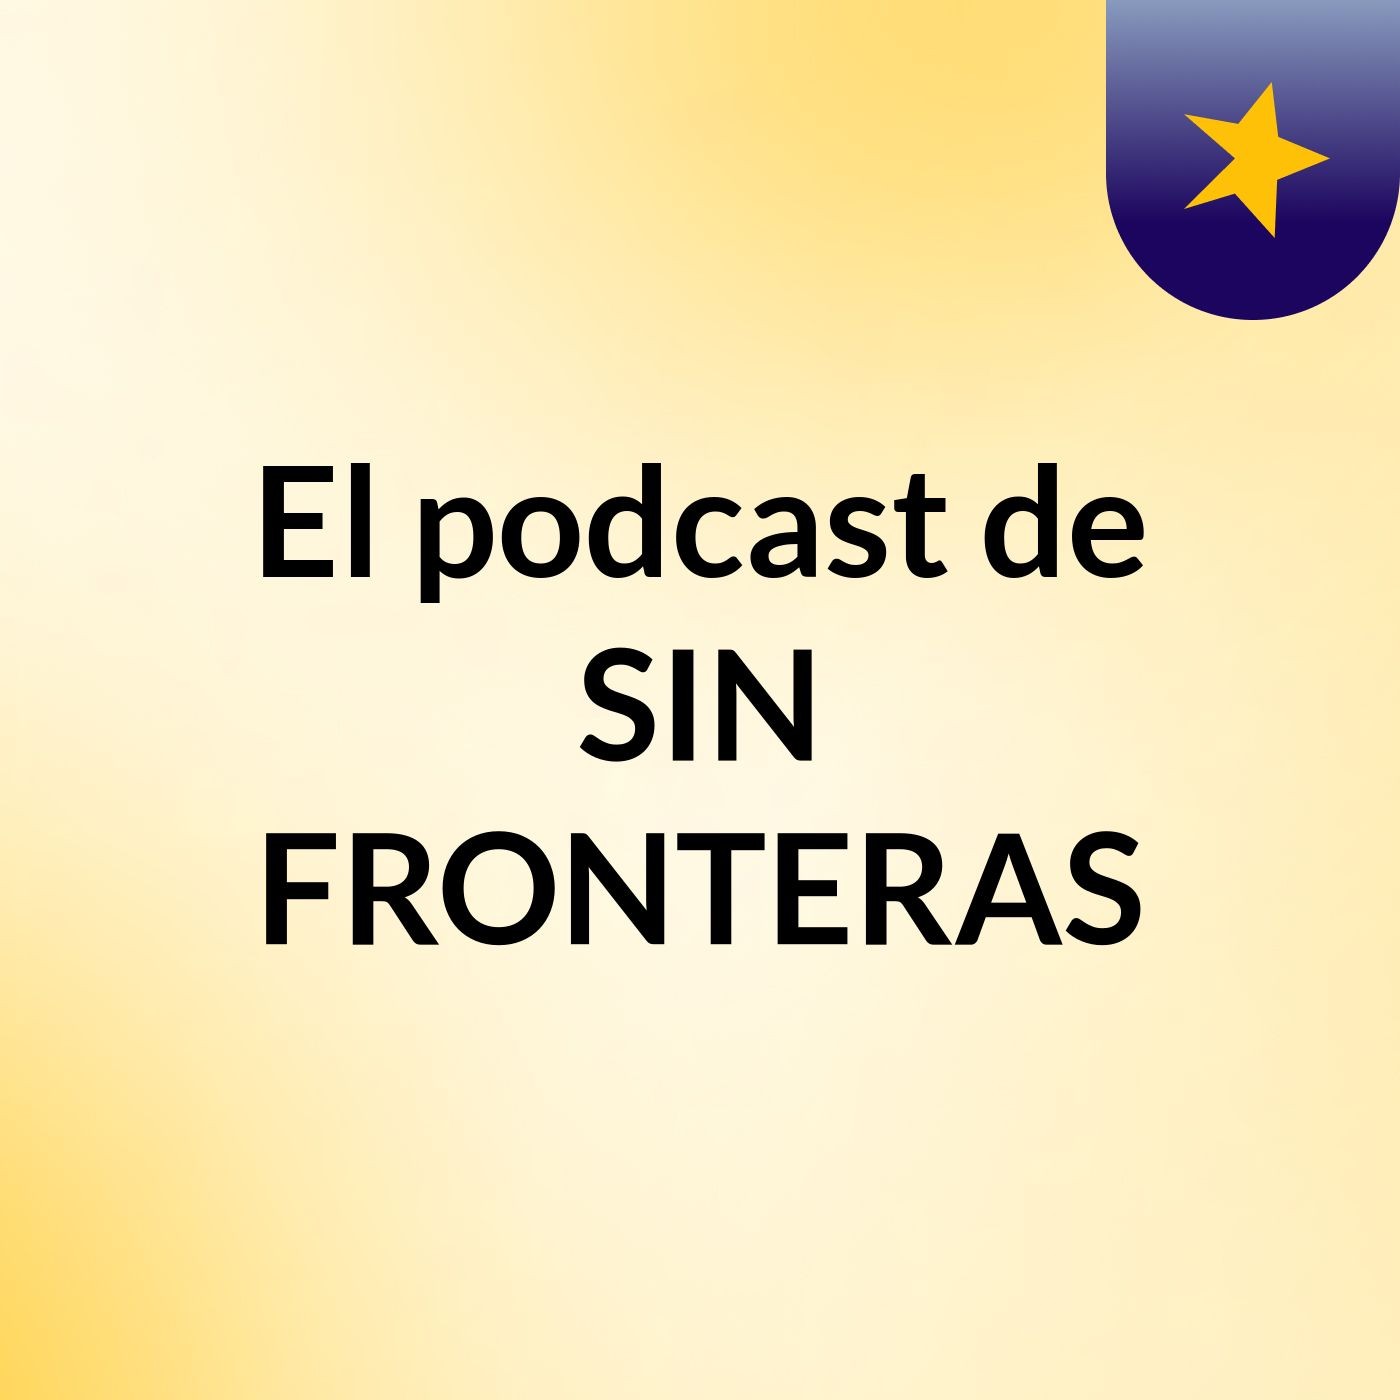 El podcast de SIN FRONTERAS